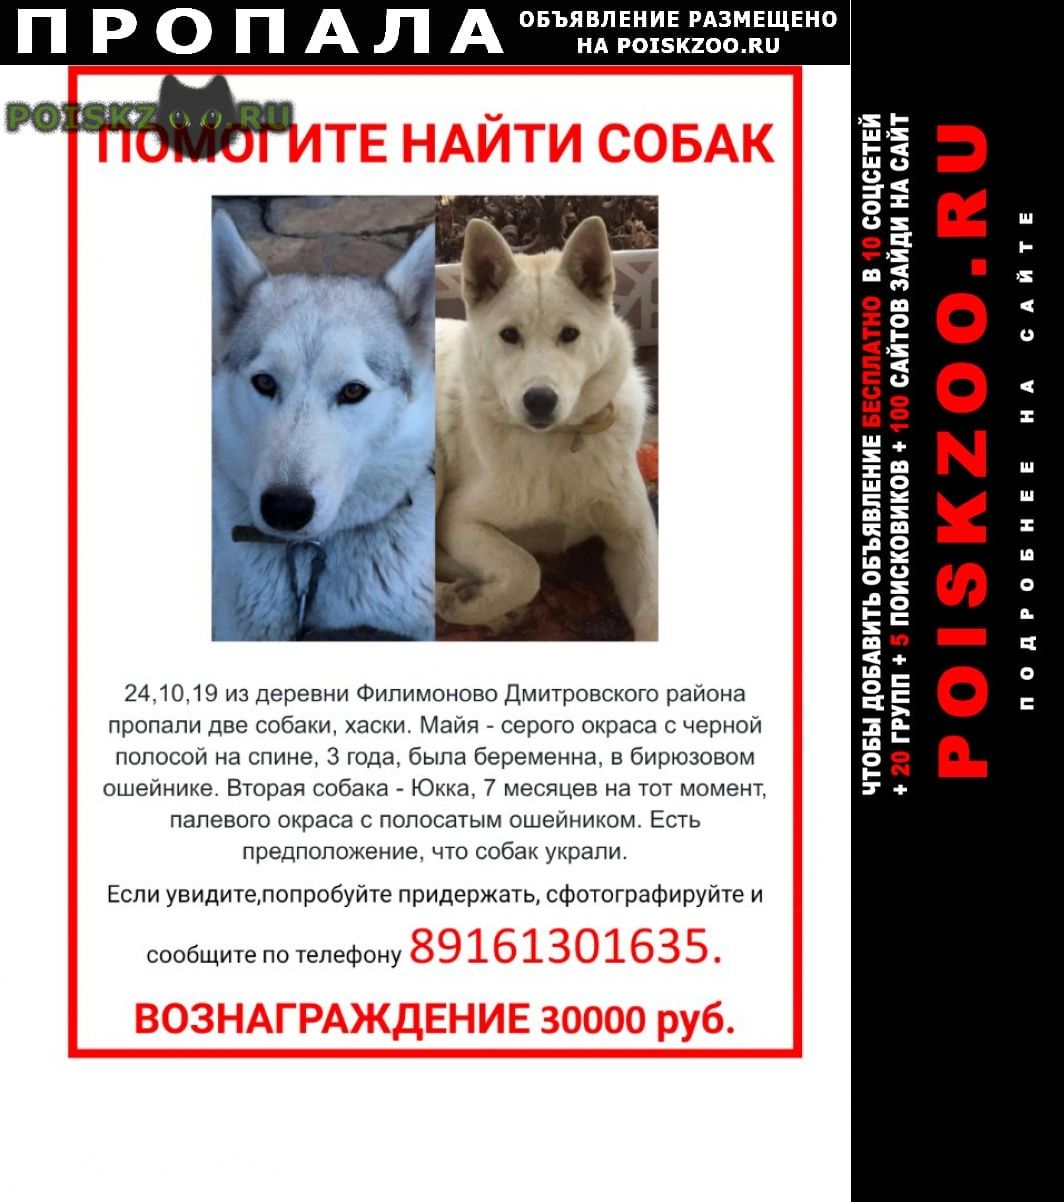 Потеряна собака московская область. Пропала собака. Объявление о пропаже собаки хаски. Пропали две собаки. Объявление пропала хаски.